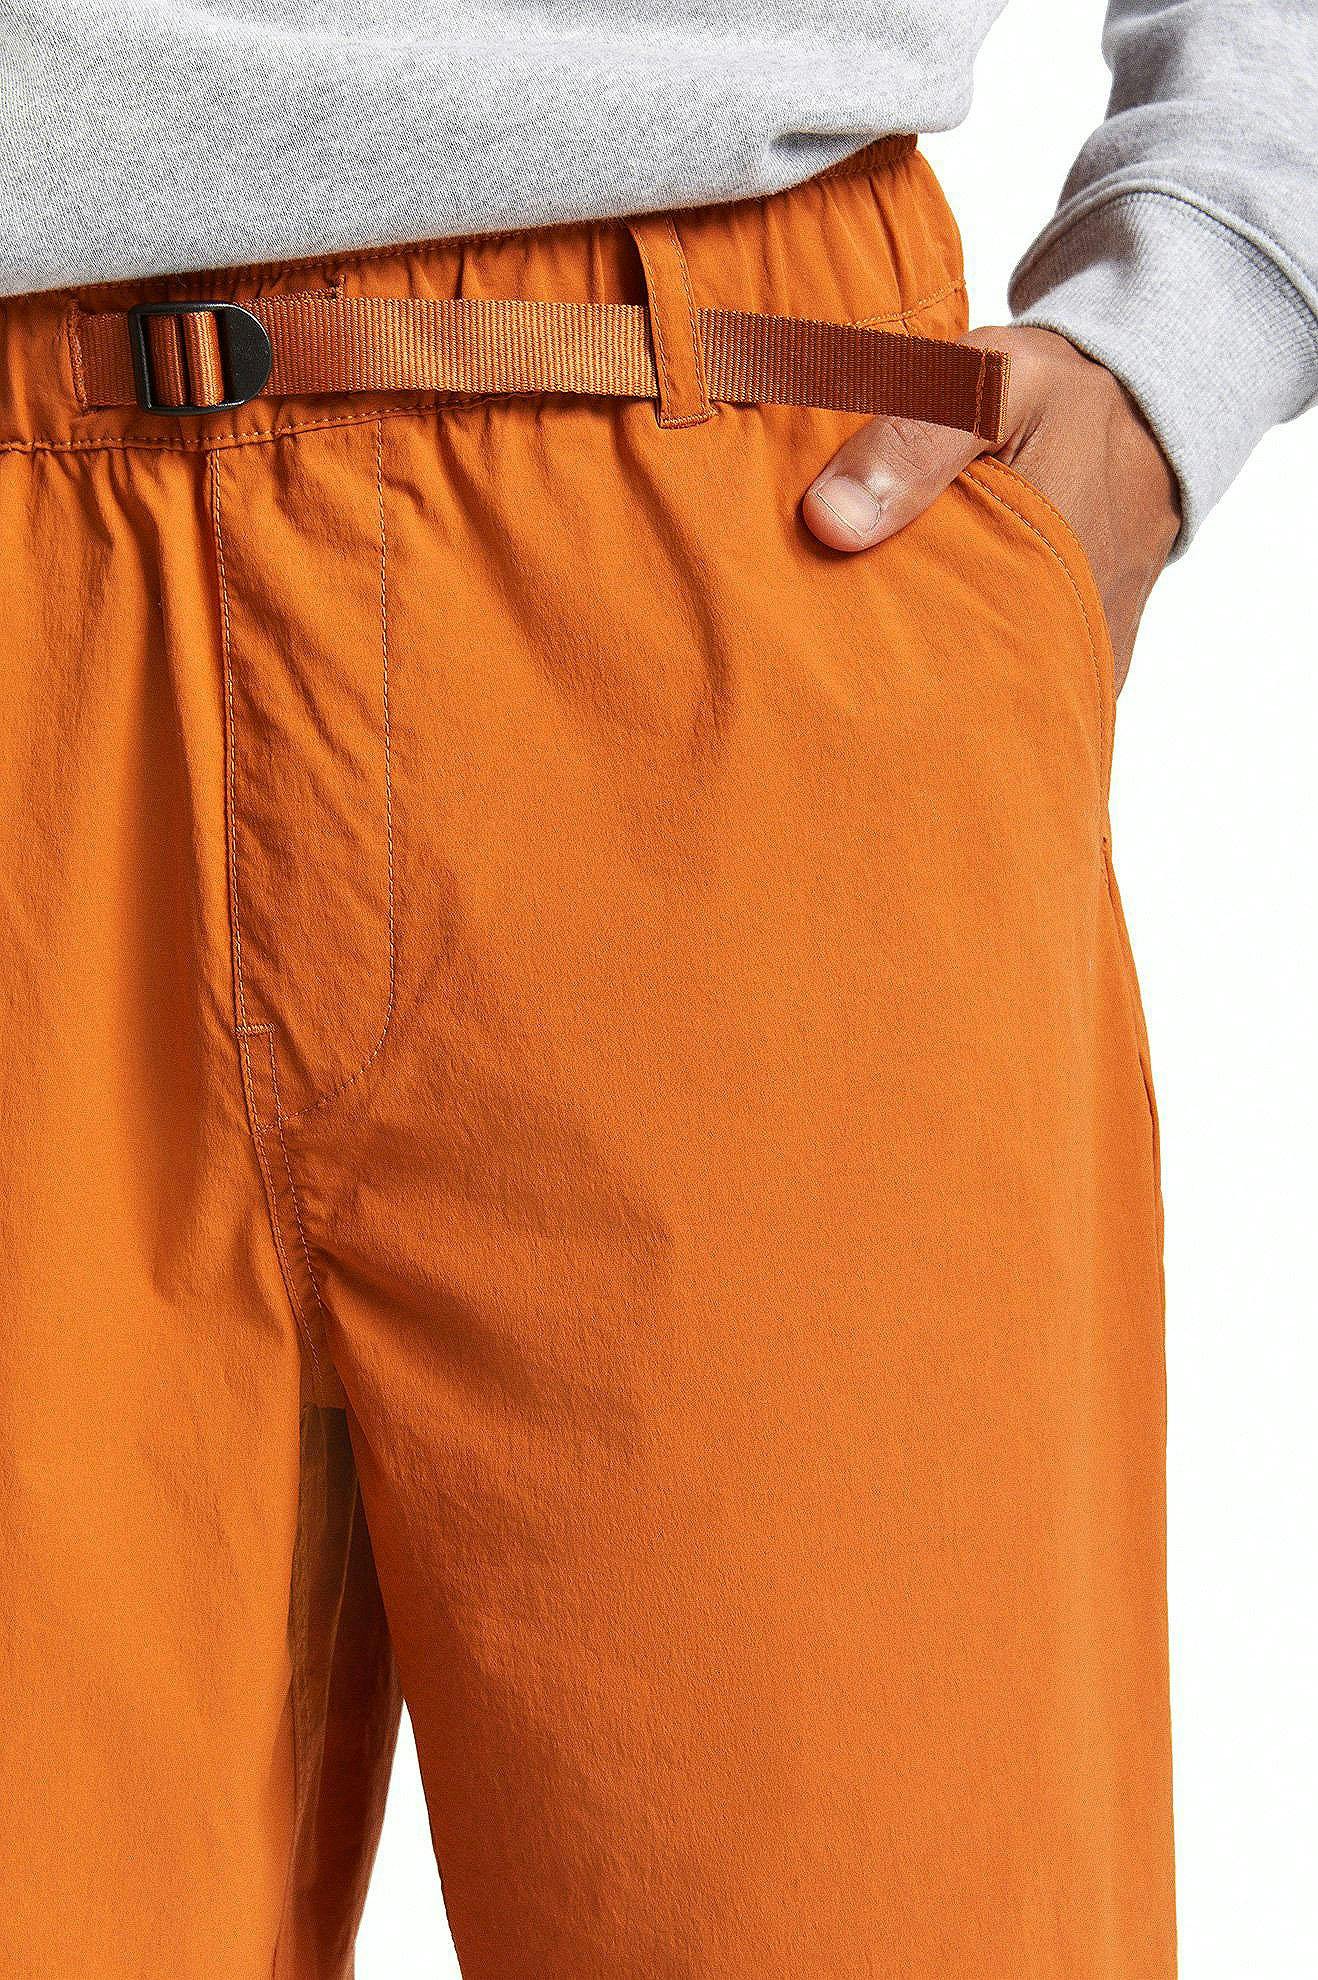 Numéro de l'image de la galerie de produits 4 pour le produit Pantalon Steady Cinch Taper X - Homme